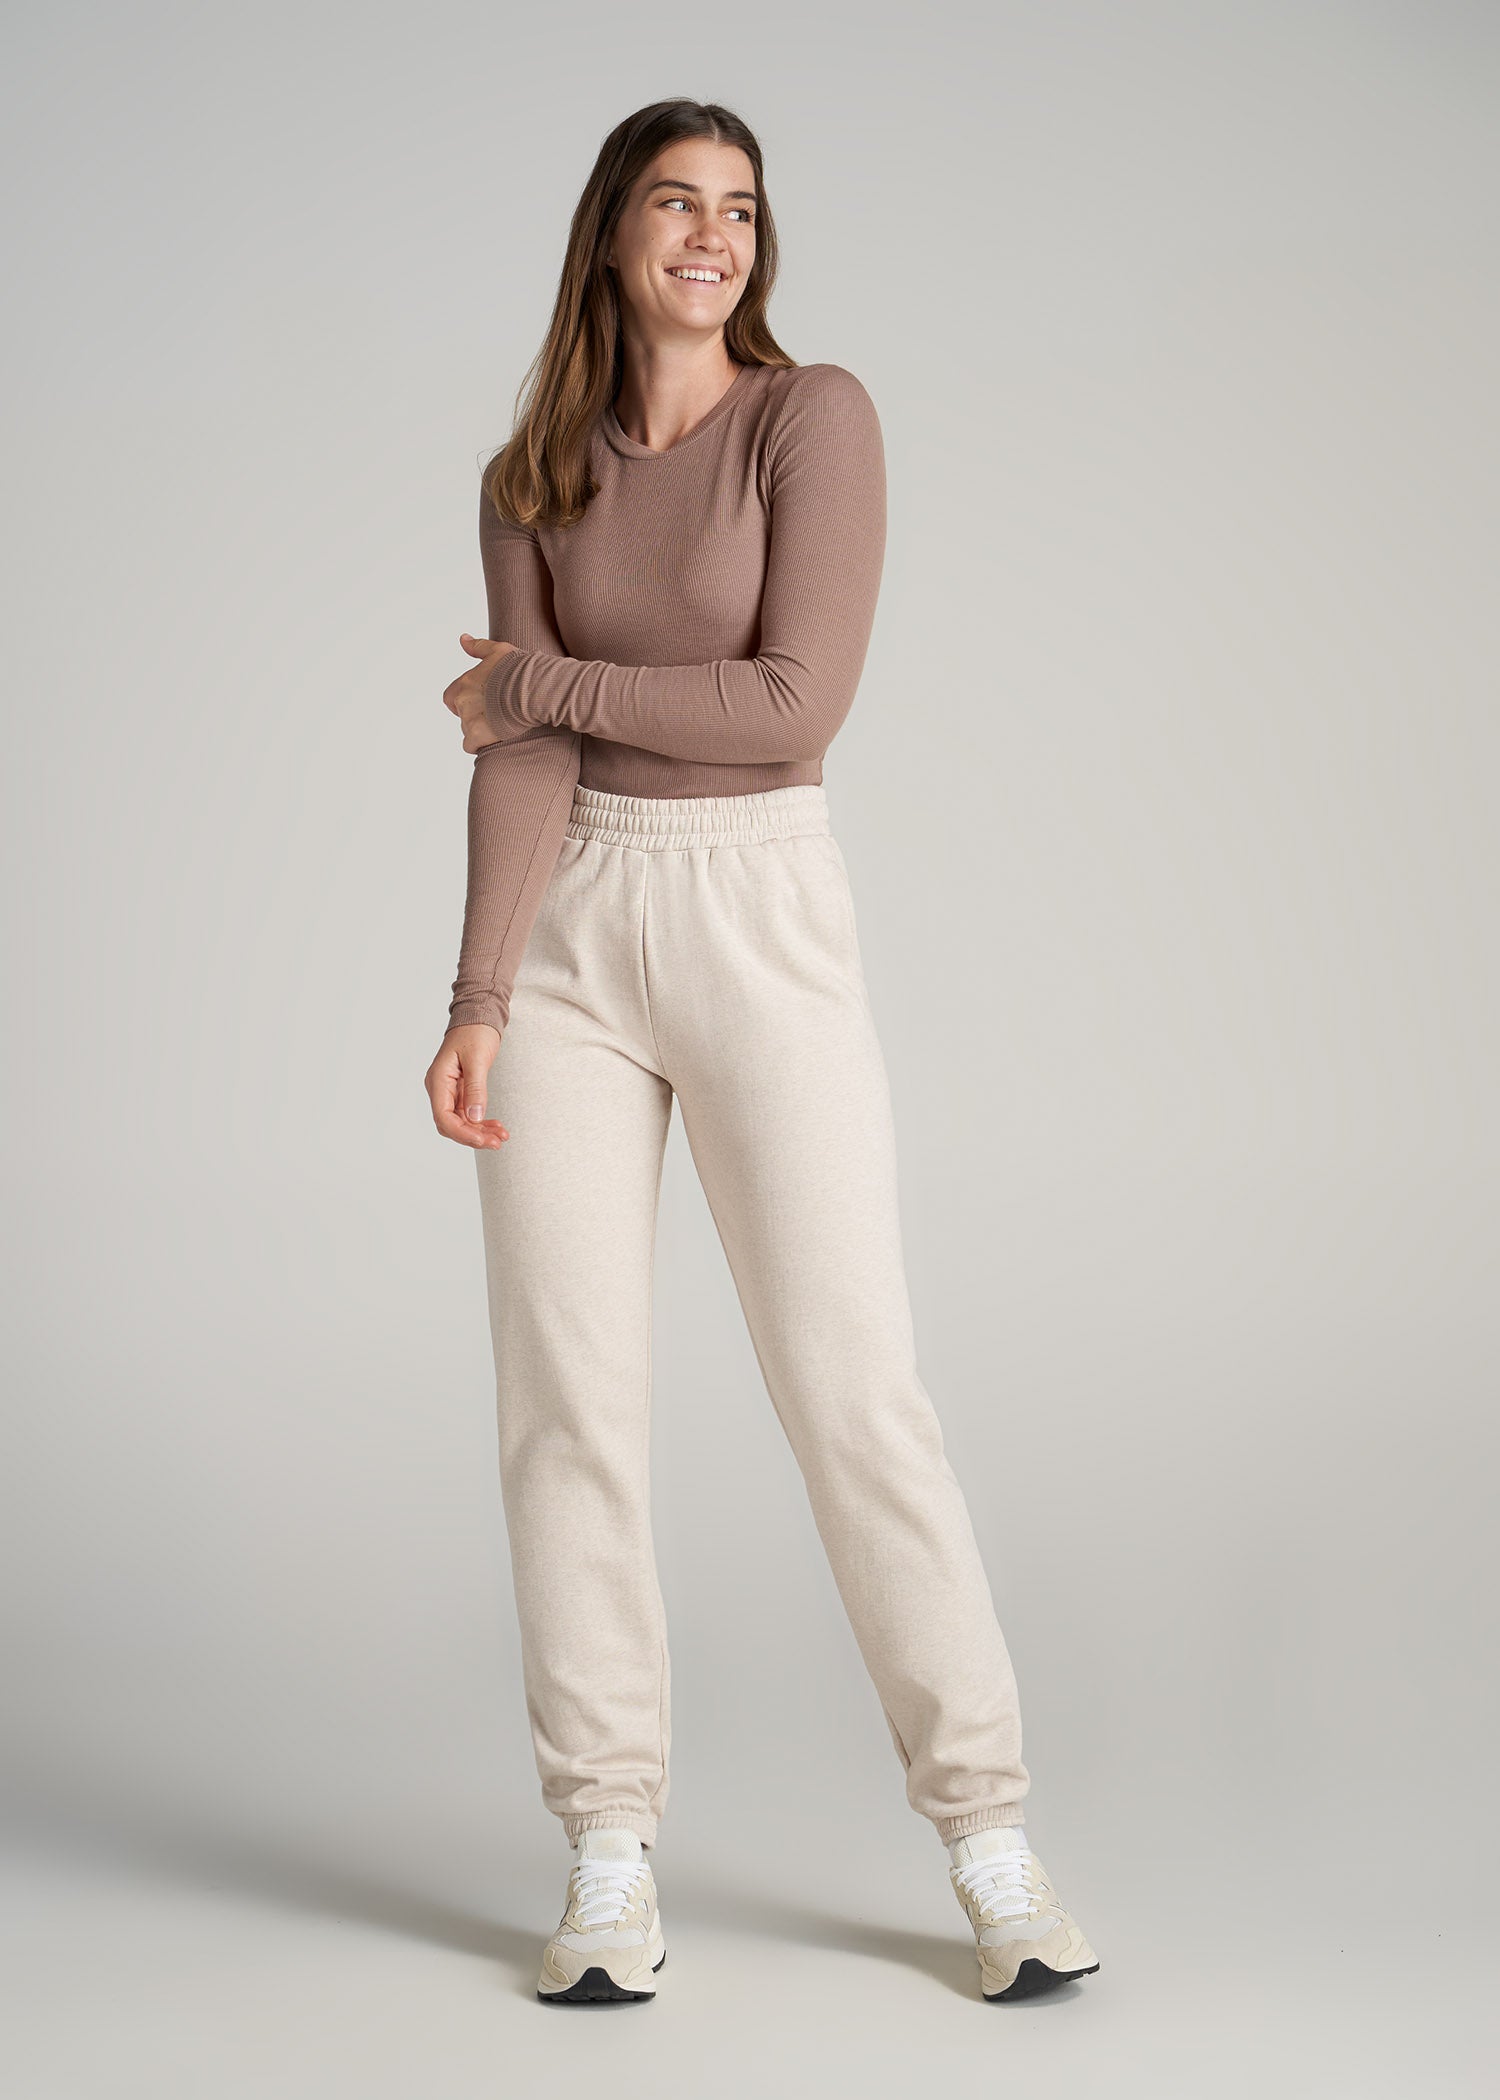 Wearever Fleece Open-Bottom Sweatpants for Tall Women in Heather Cloud White